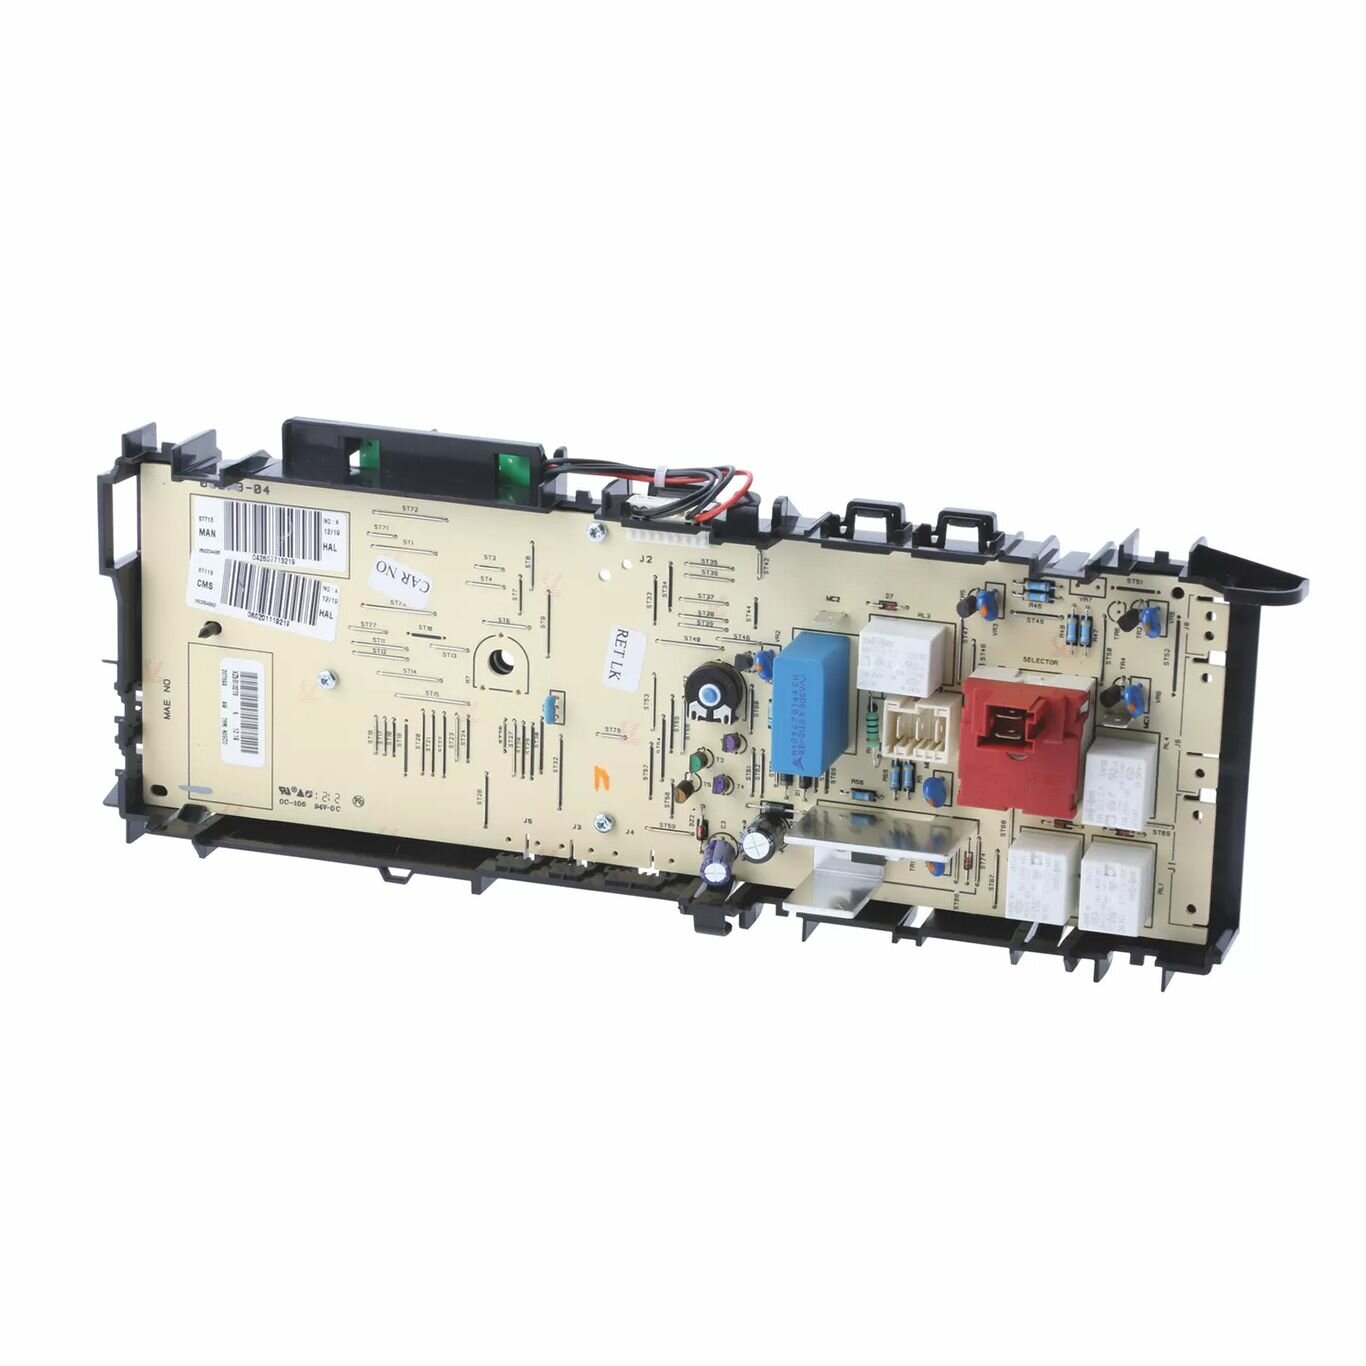 Силовой модуль с дисплеем для стиральной машины Bosch 703657, 676397 (52X2235, 252204351-07/25. G2485, 09273-01)